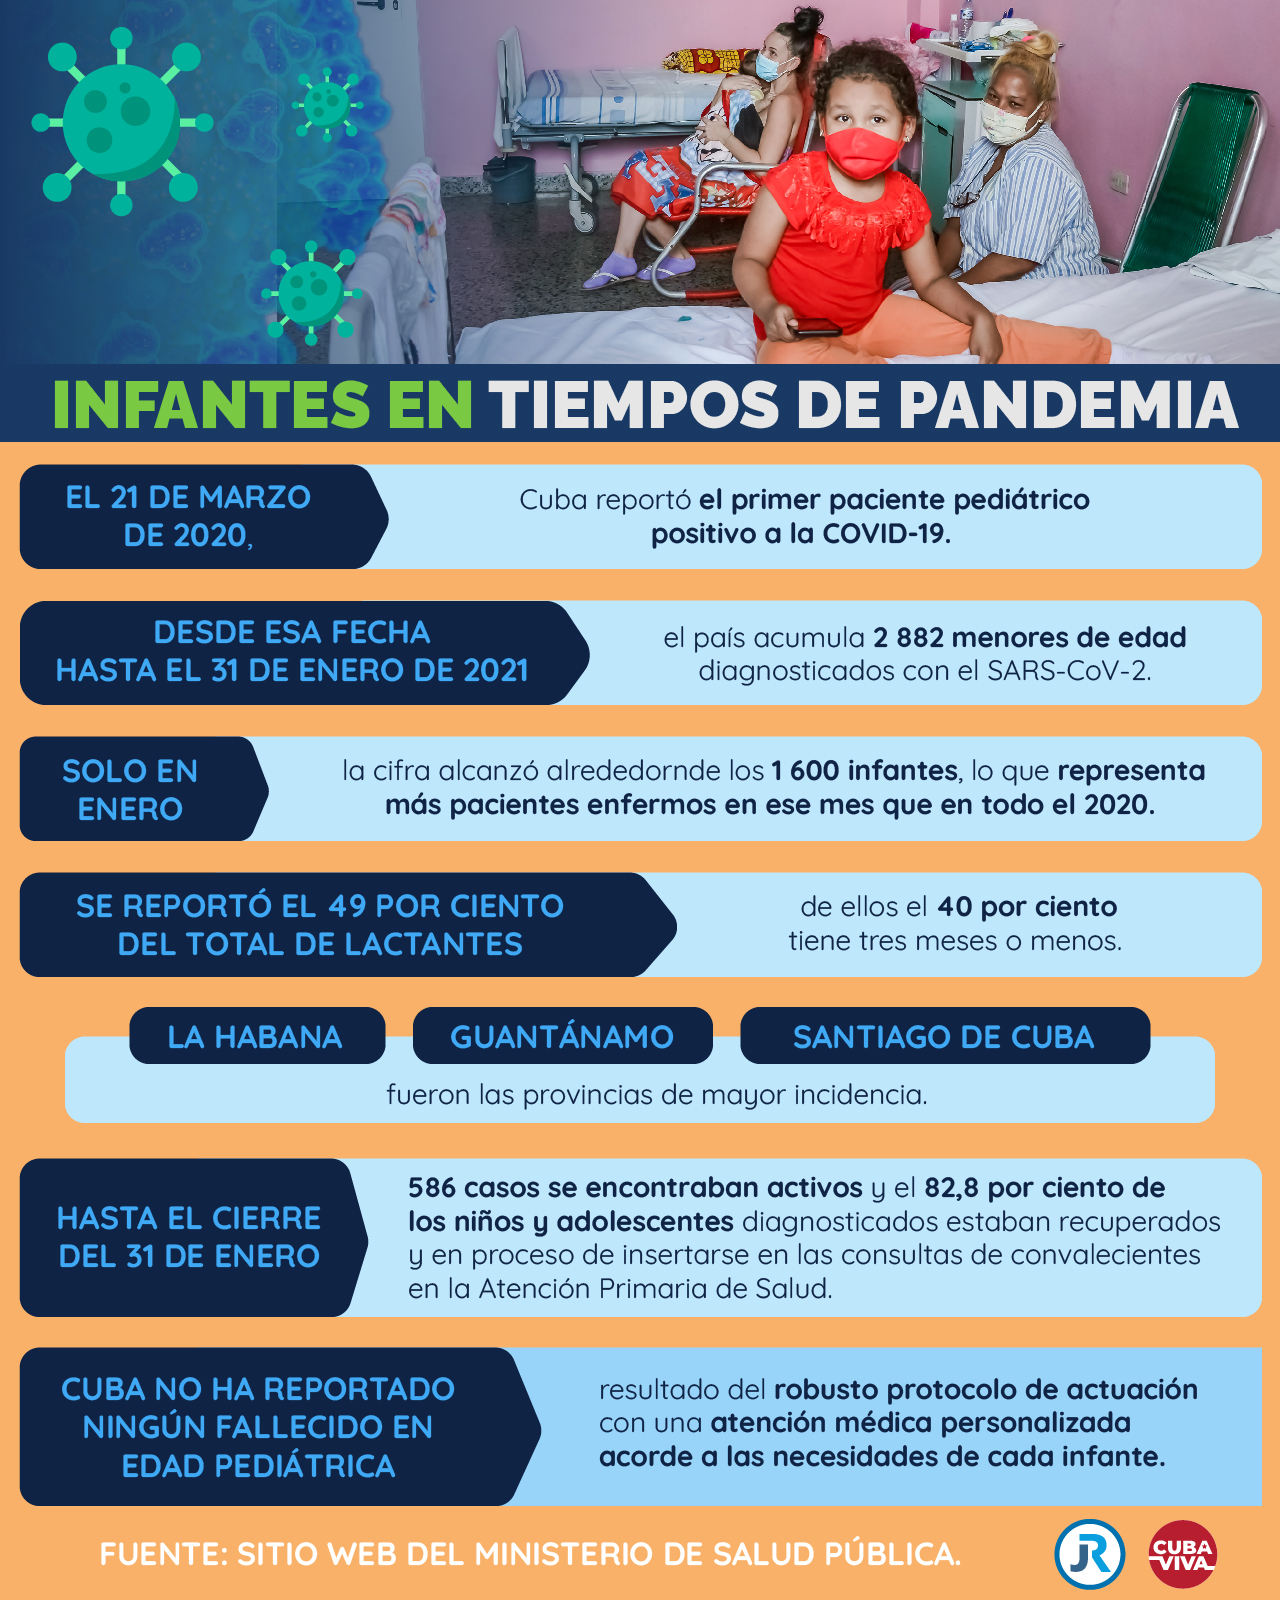 Infantes en tiempos de pandemia en Cuba: los datos